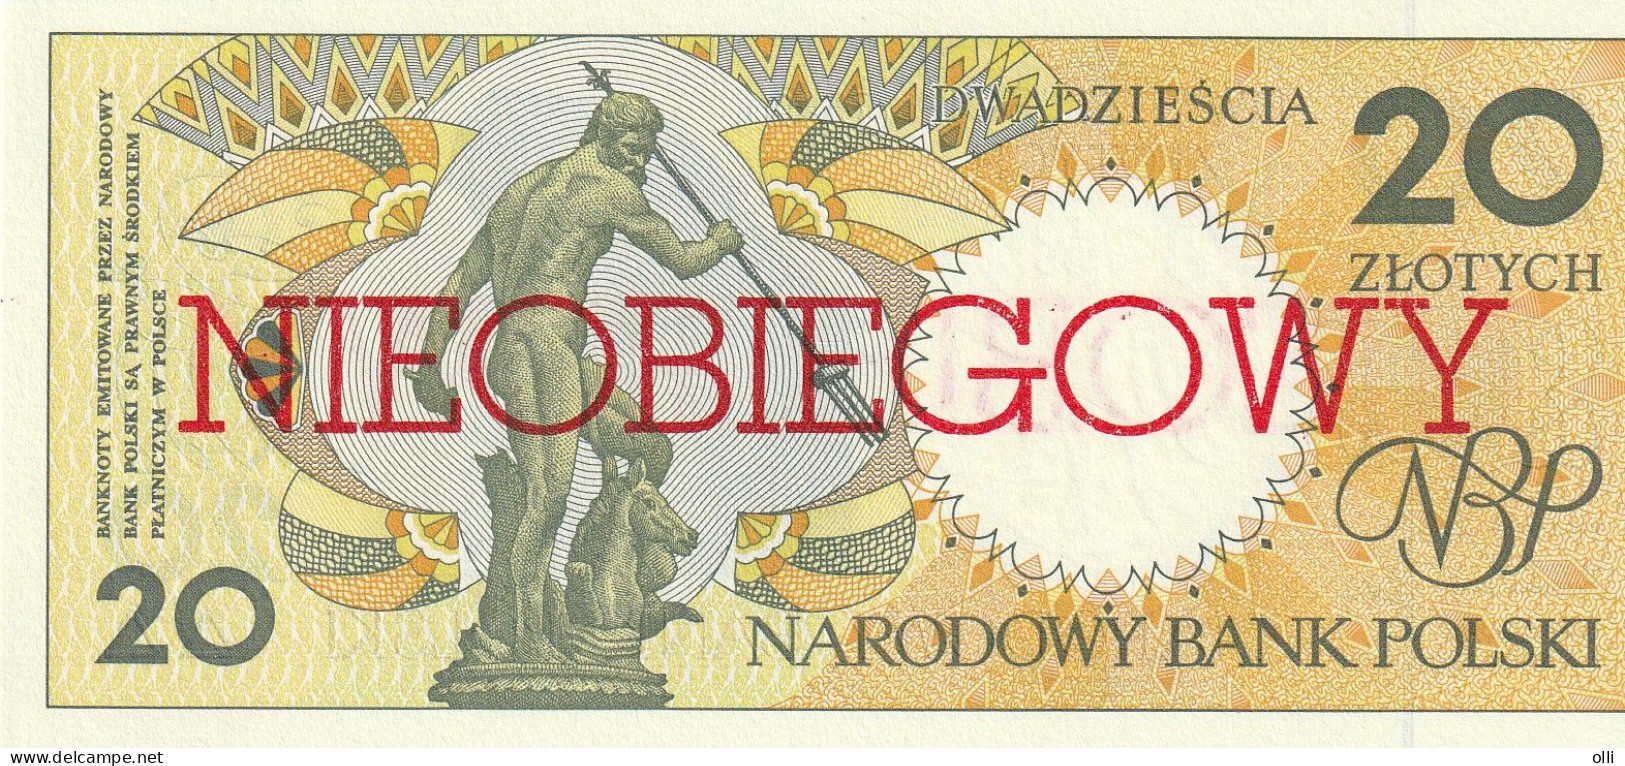 POLAND 1990 20 ZLOTYCH NIEOBIEGOWY  1990 P-168 UNC - Pologne